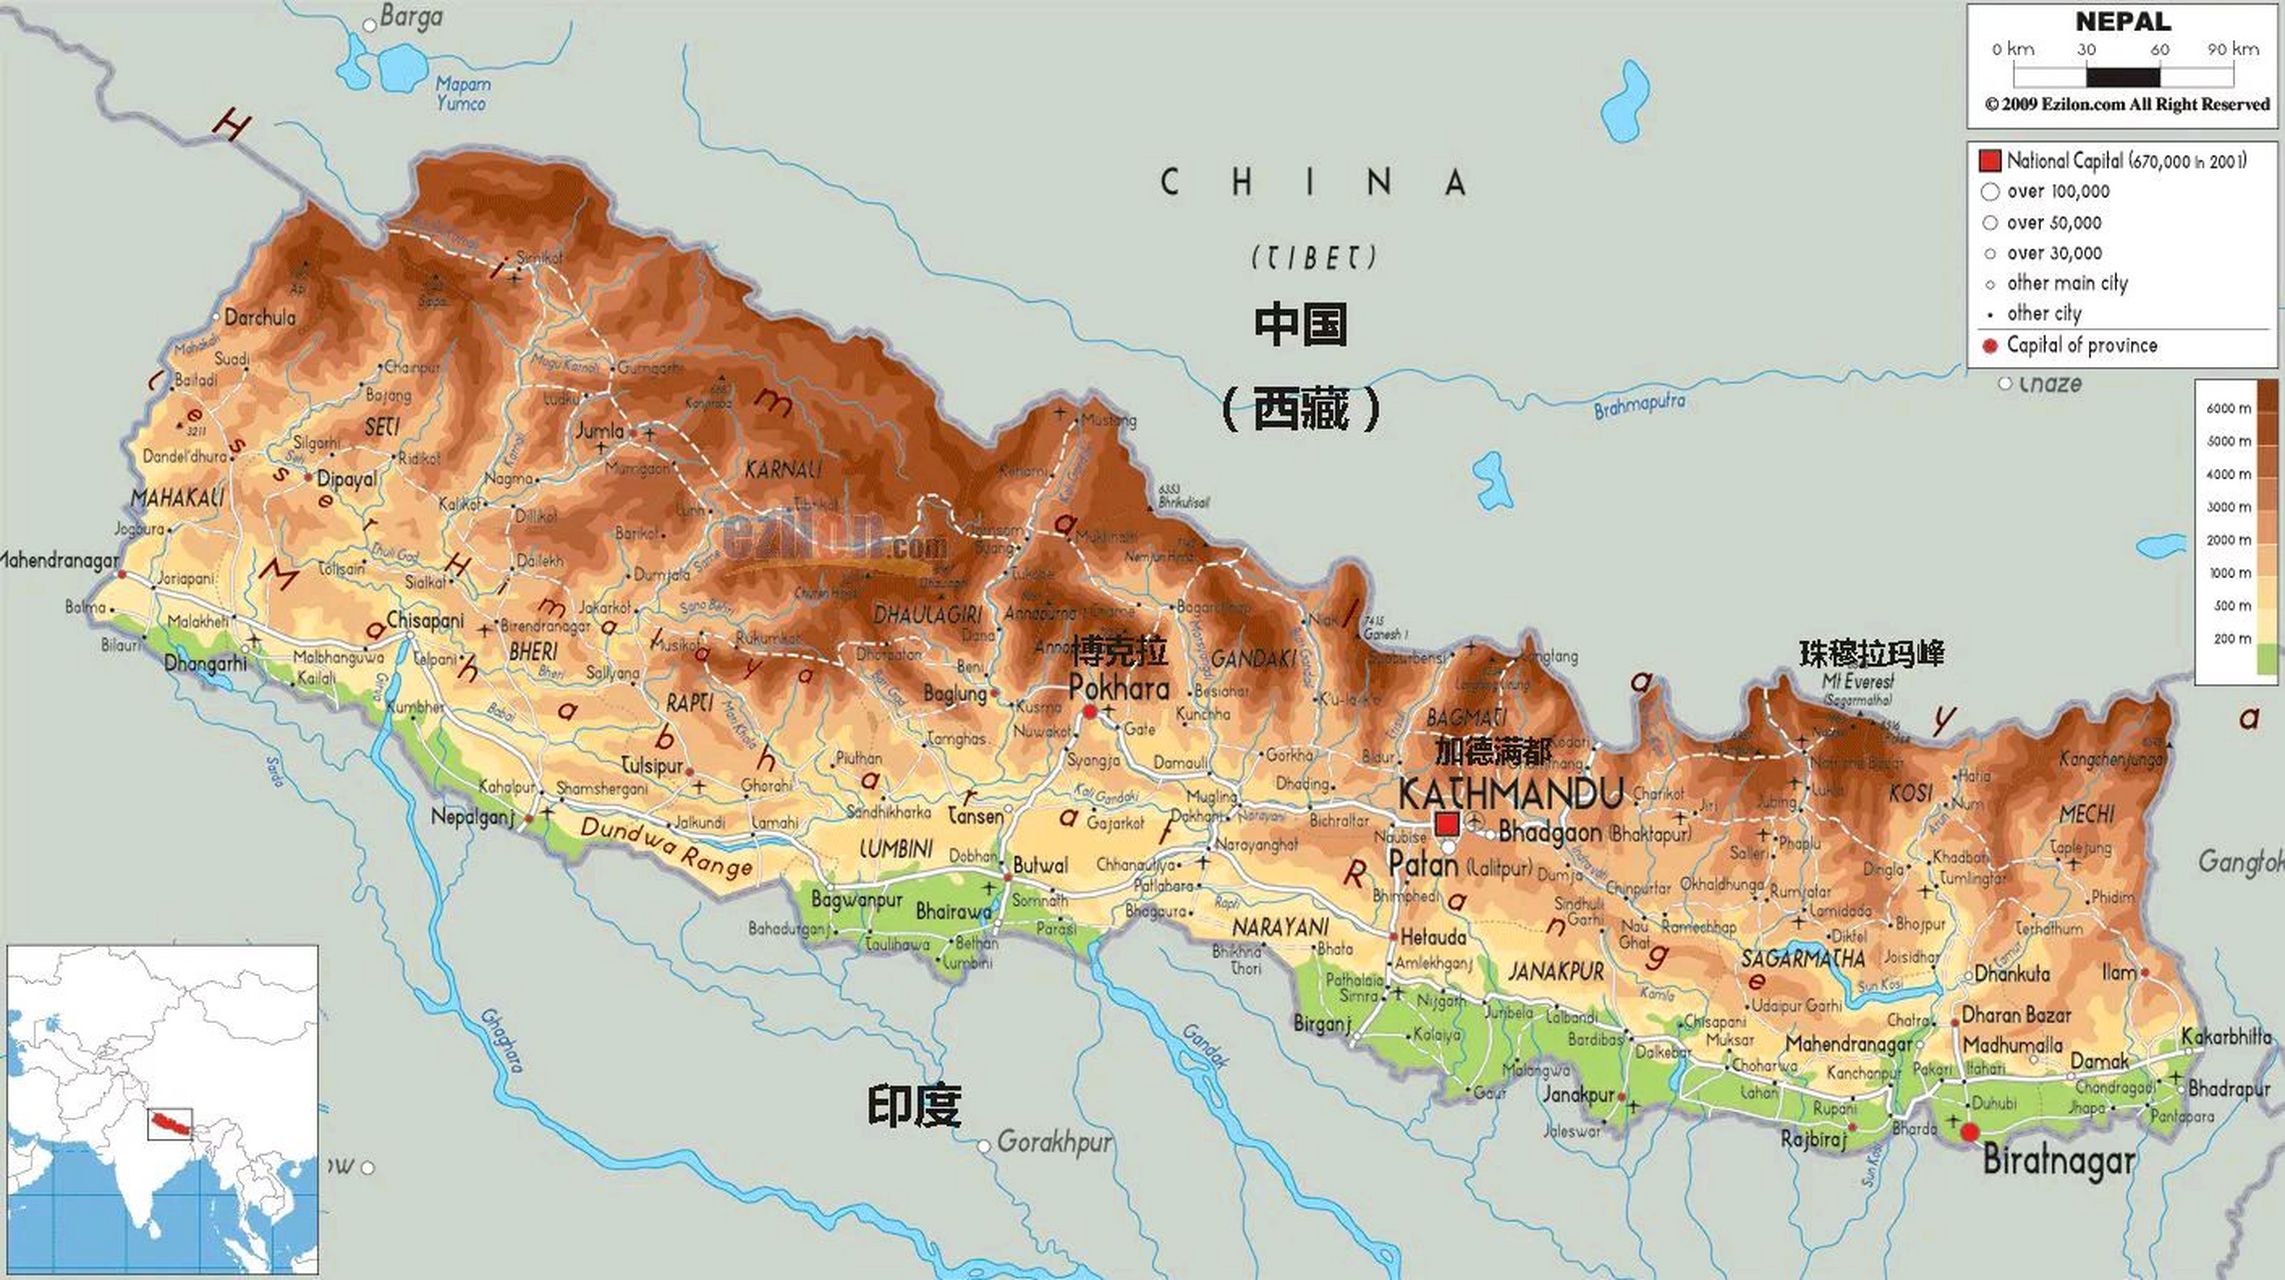 尼泊尔:山地迷的梦幻王国  尼泊尔是一个被夹在中国和印度两个大国